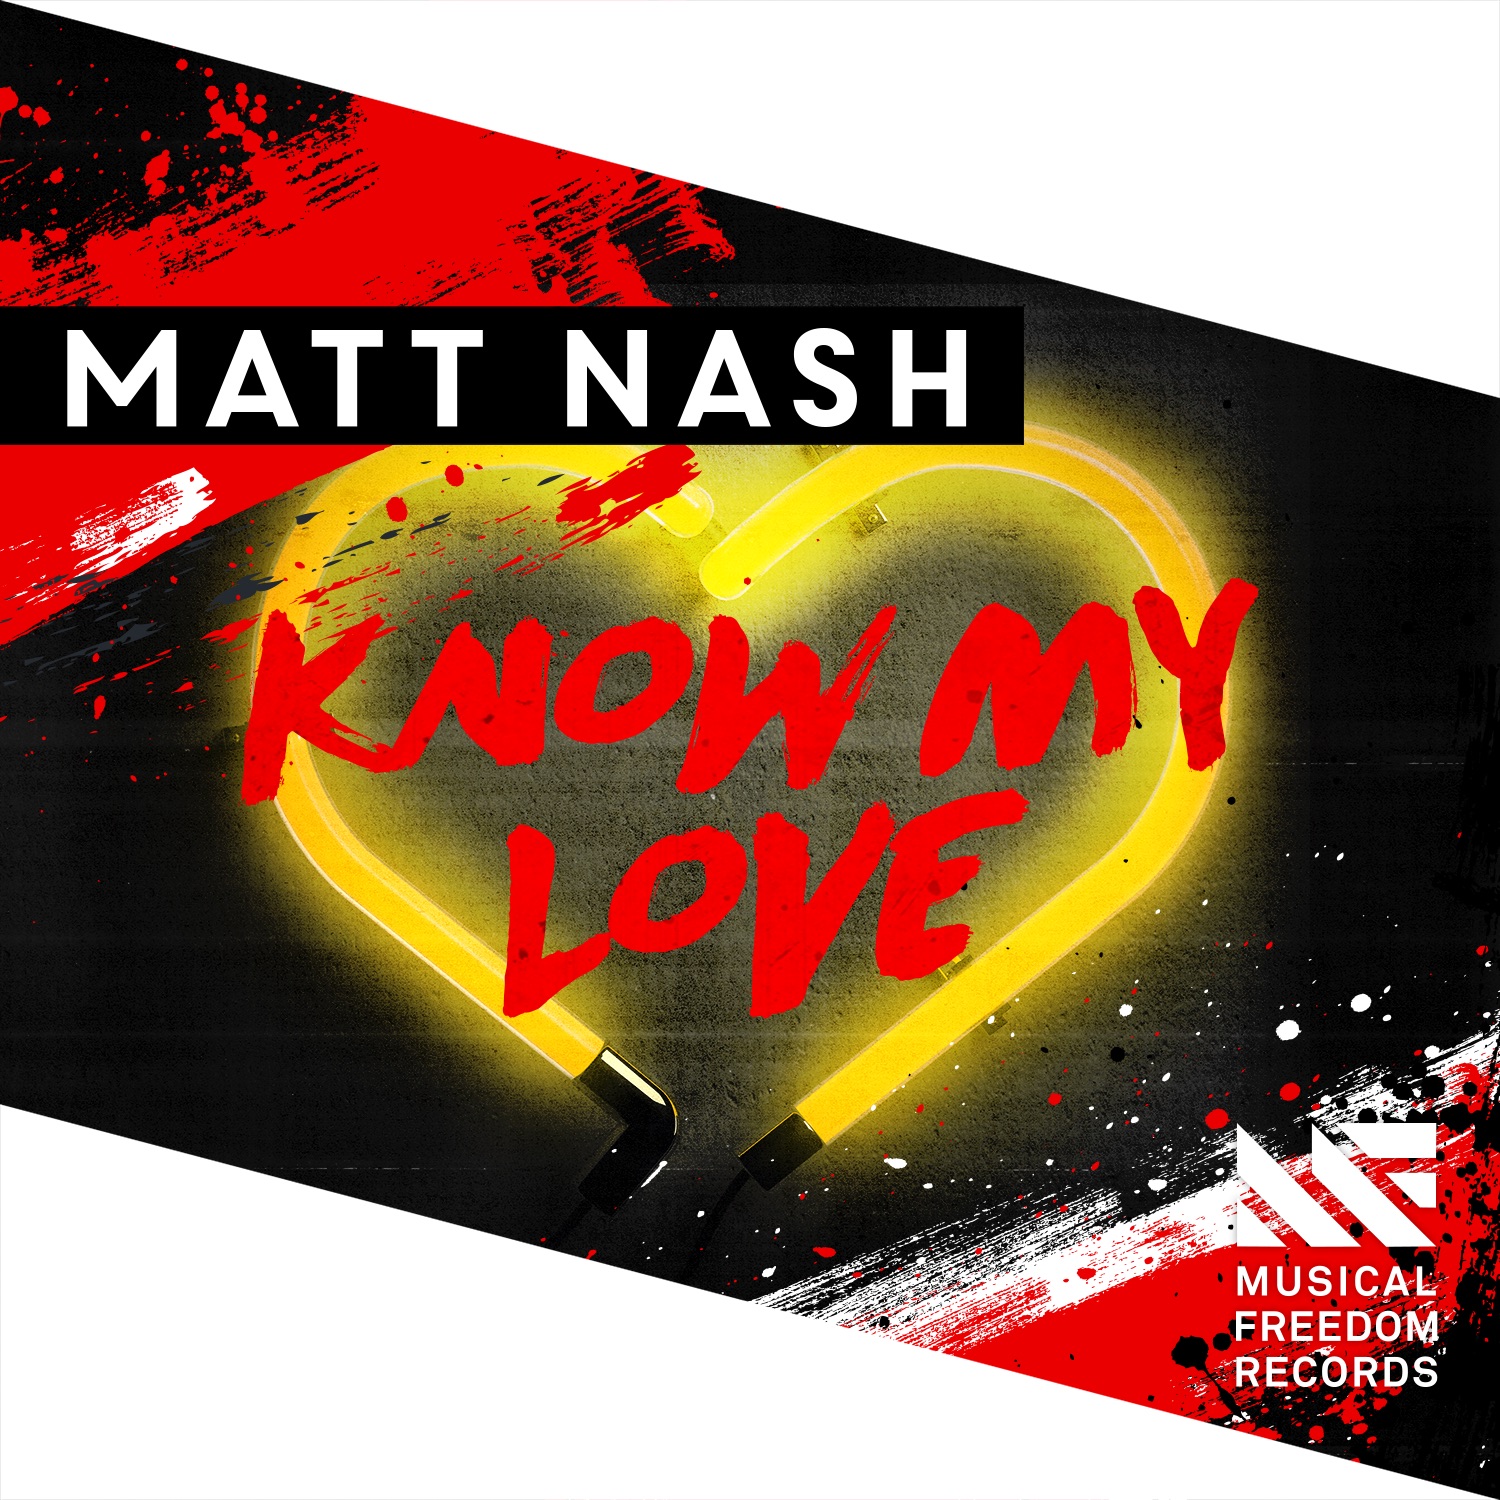 БЫСТРЫЕ РИТМИЧНЫЕ ПЕСНИ - Matt Nash - Know My Love фото